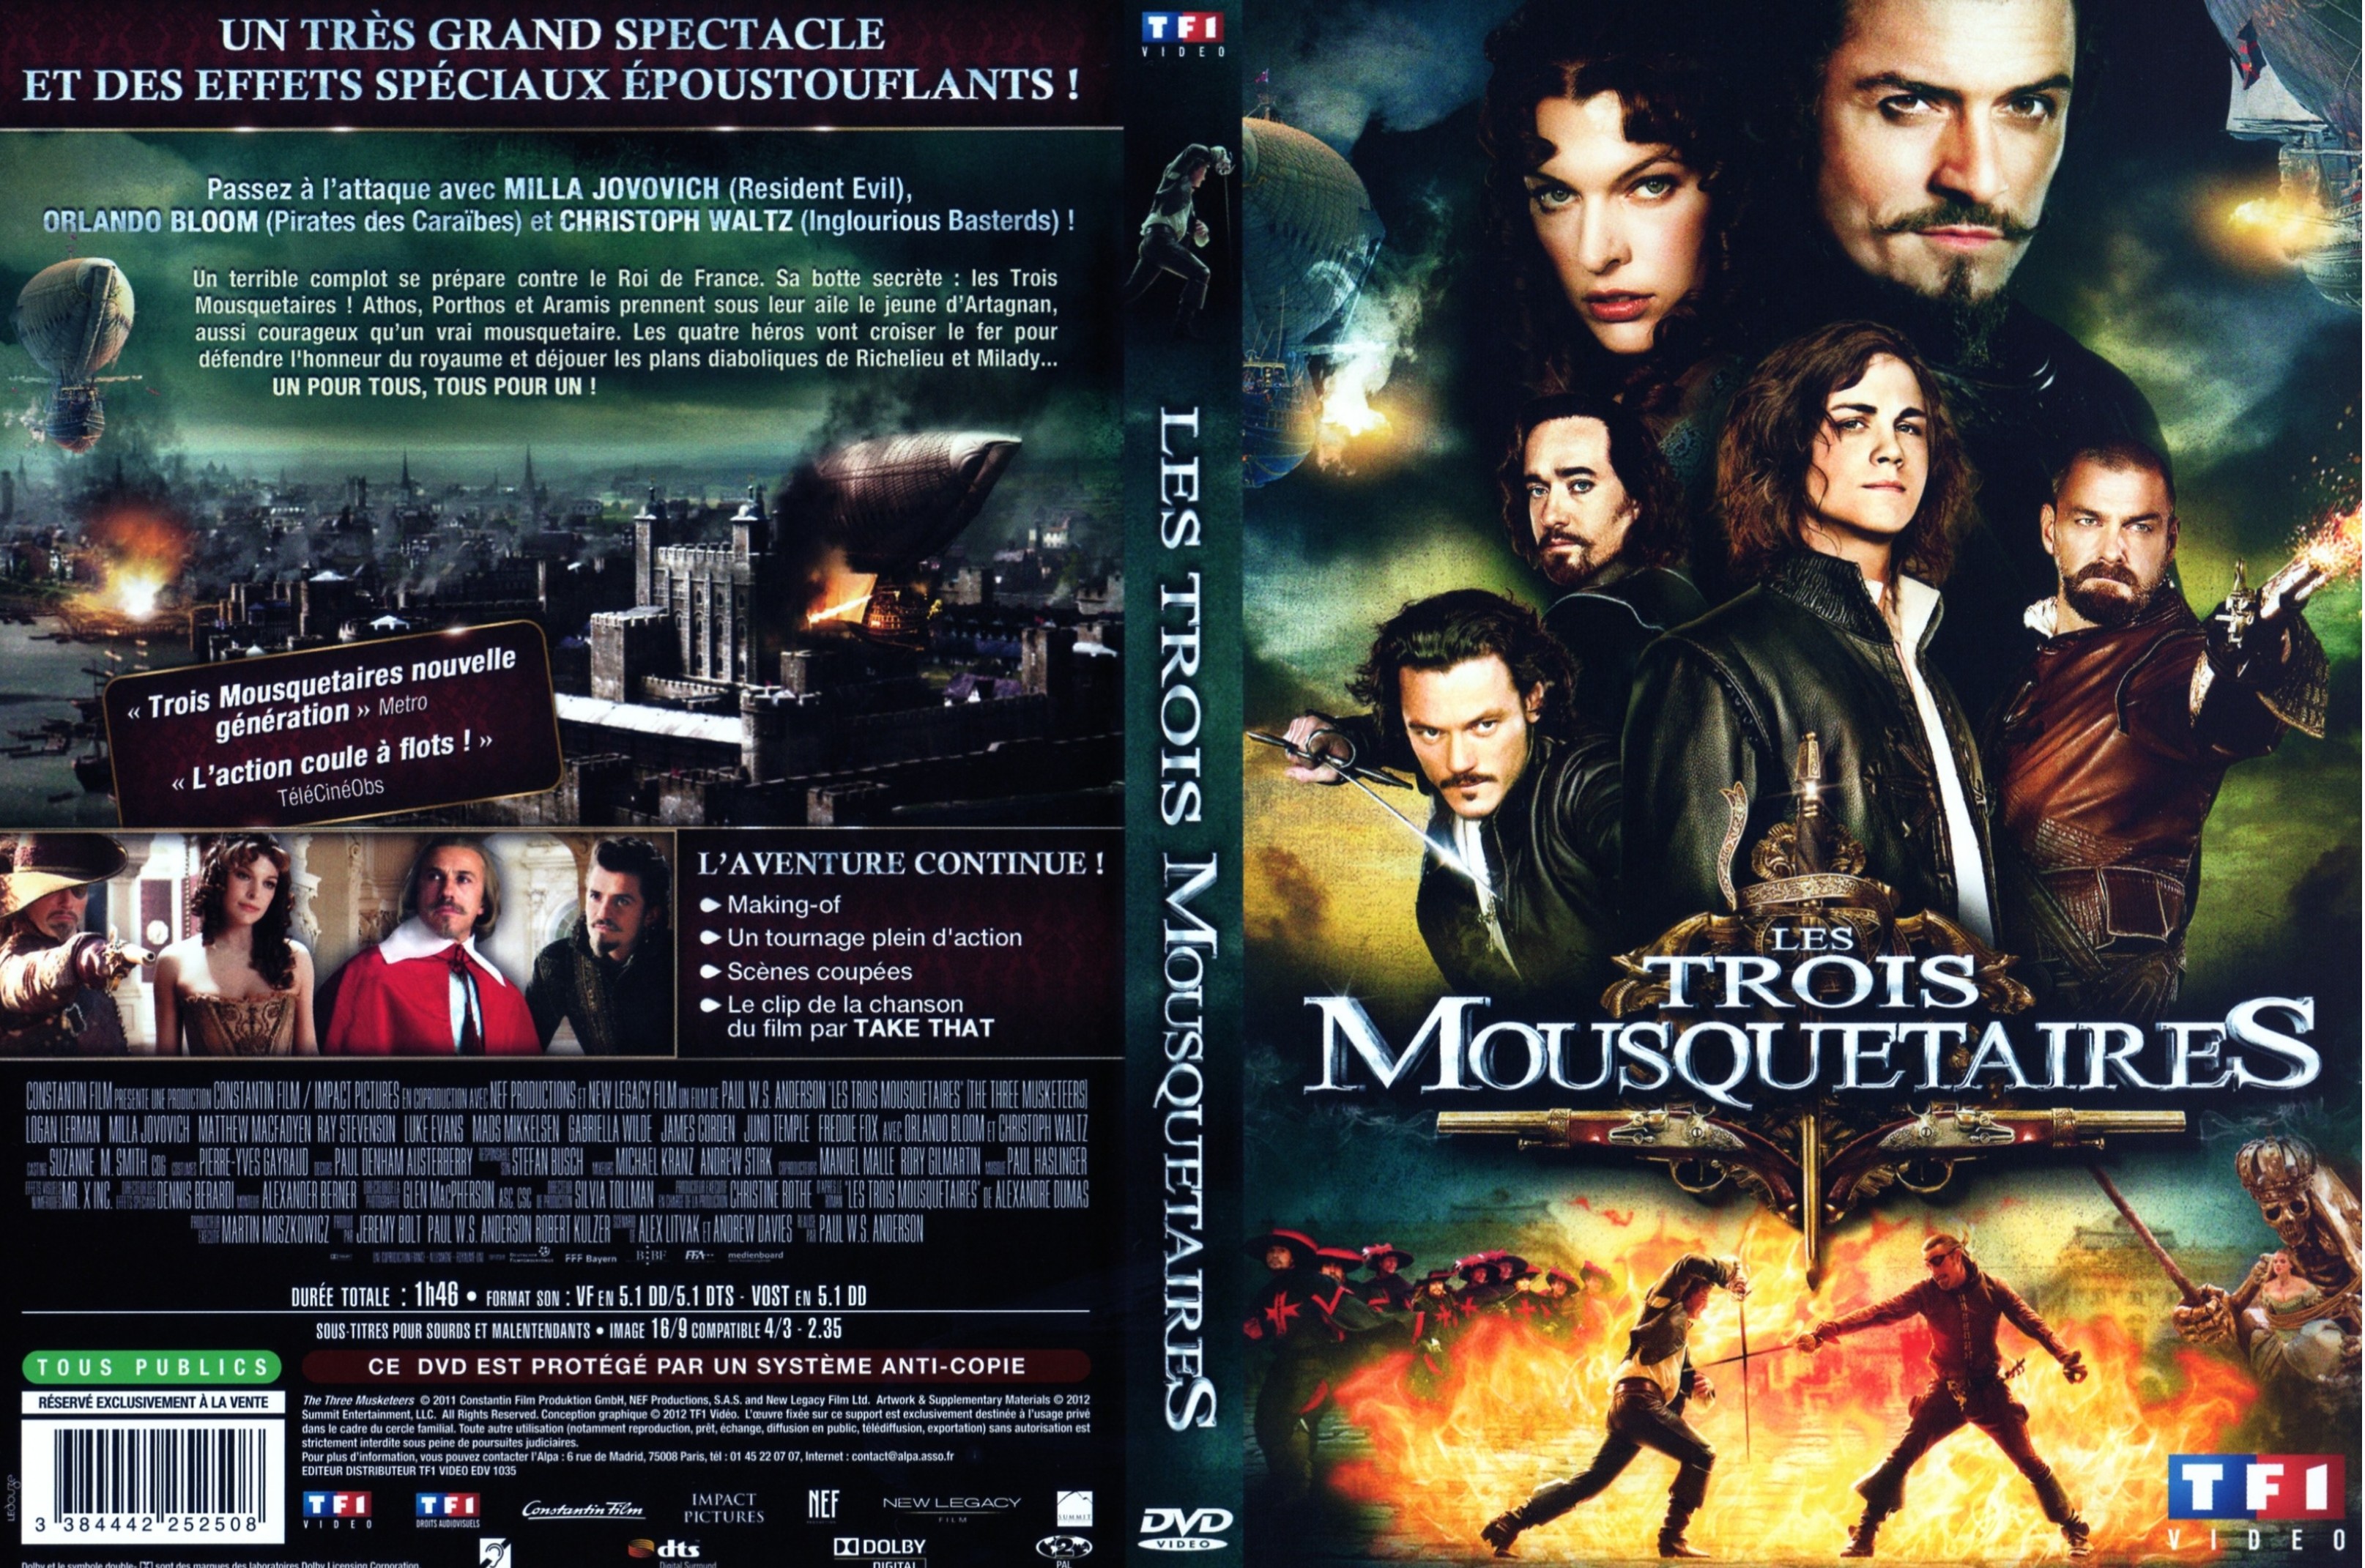 Jaquette DVD Les trois mousquetaires (2011)